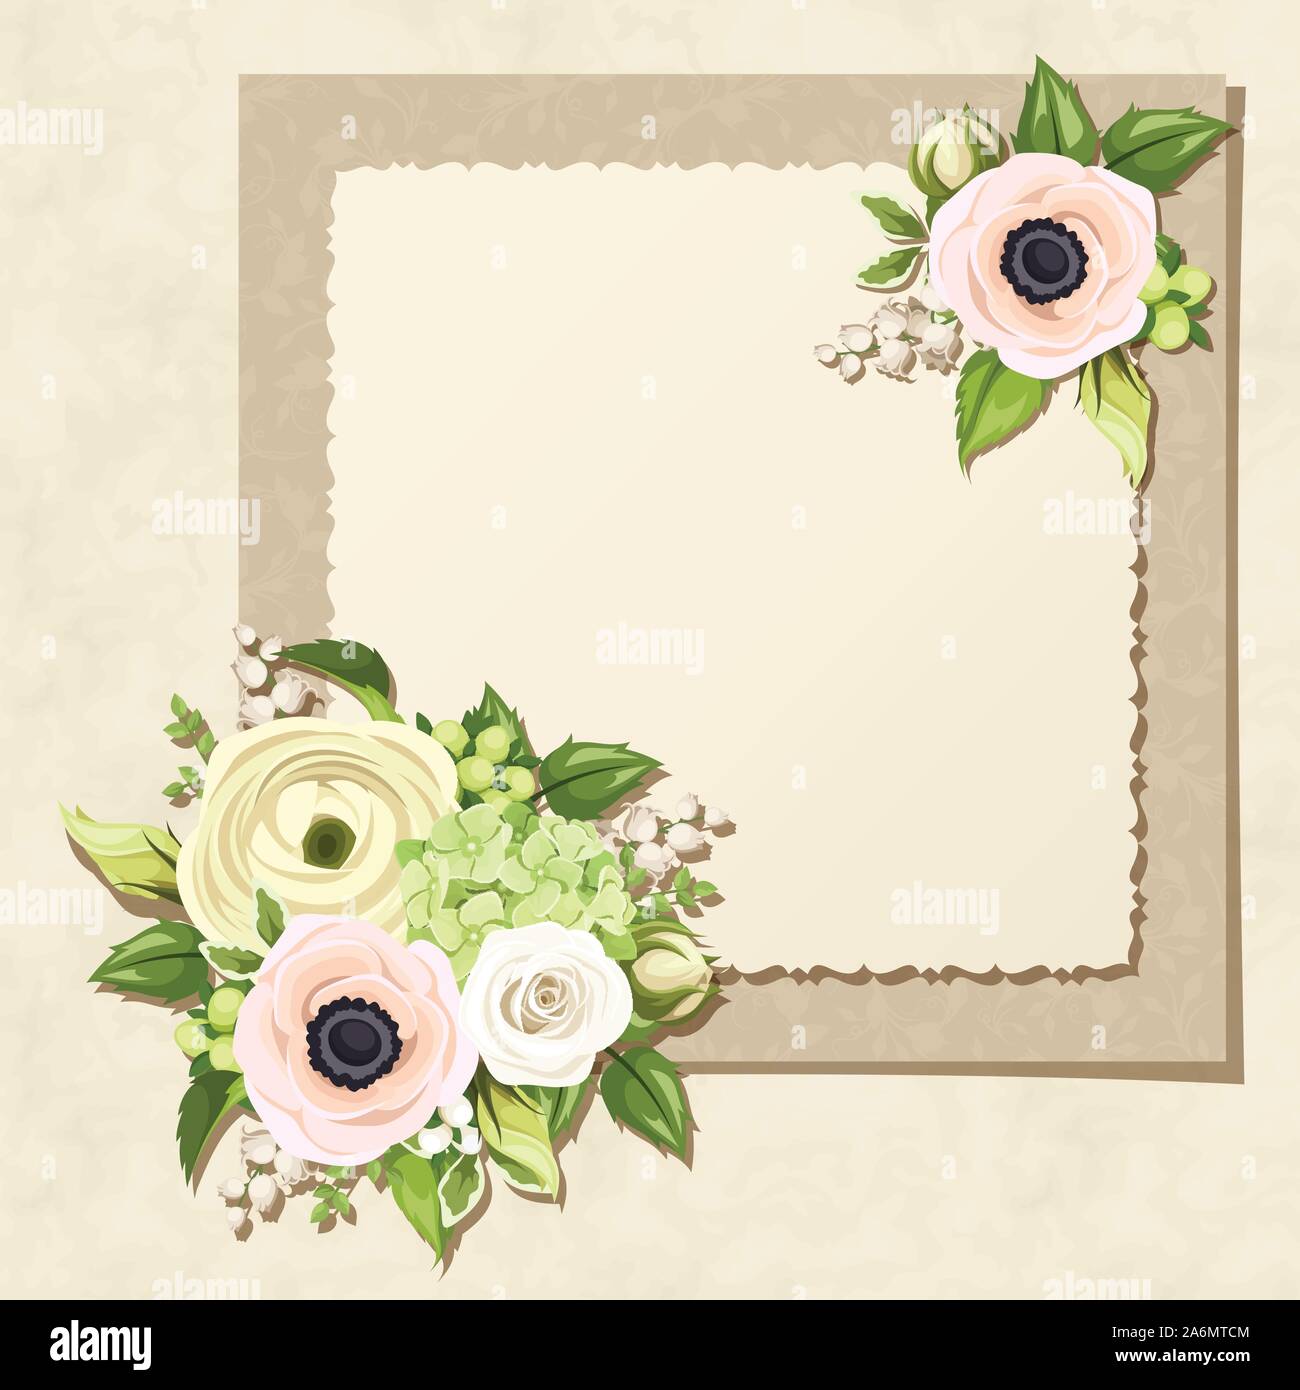 Tarjeta de felicitación de vector con blanco y verde, rosas, anémonas, ranúnculos, hortensias y lirio de los valles de flores y hojas sobre un fondo de pergamino. Ilustración del Vector